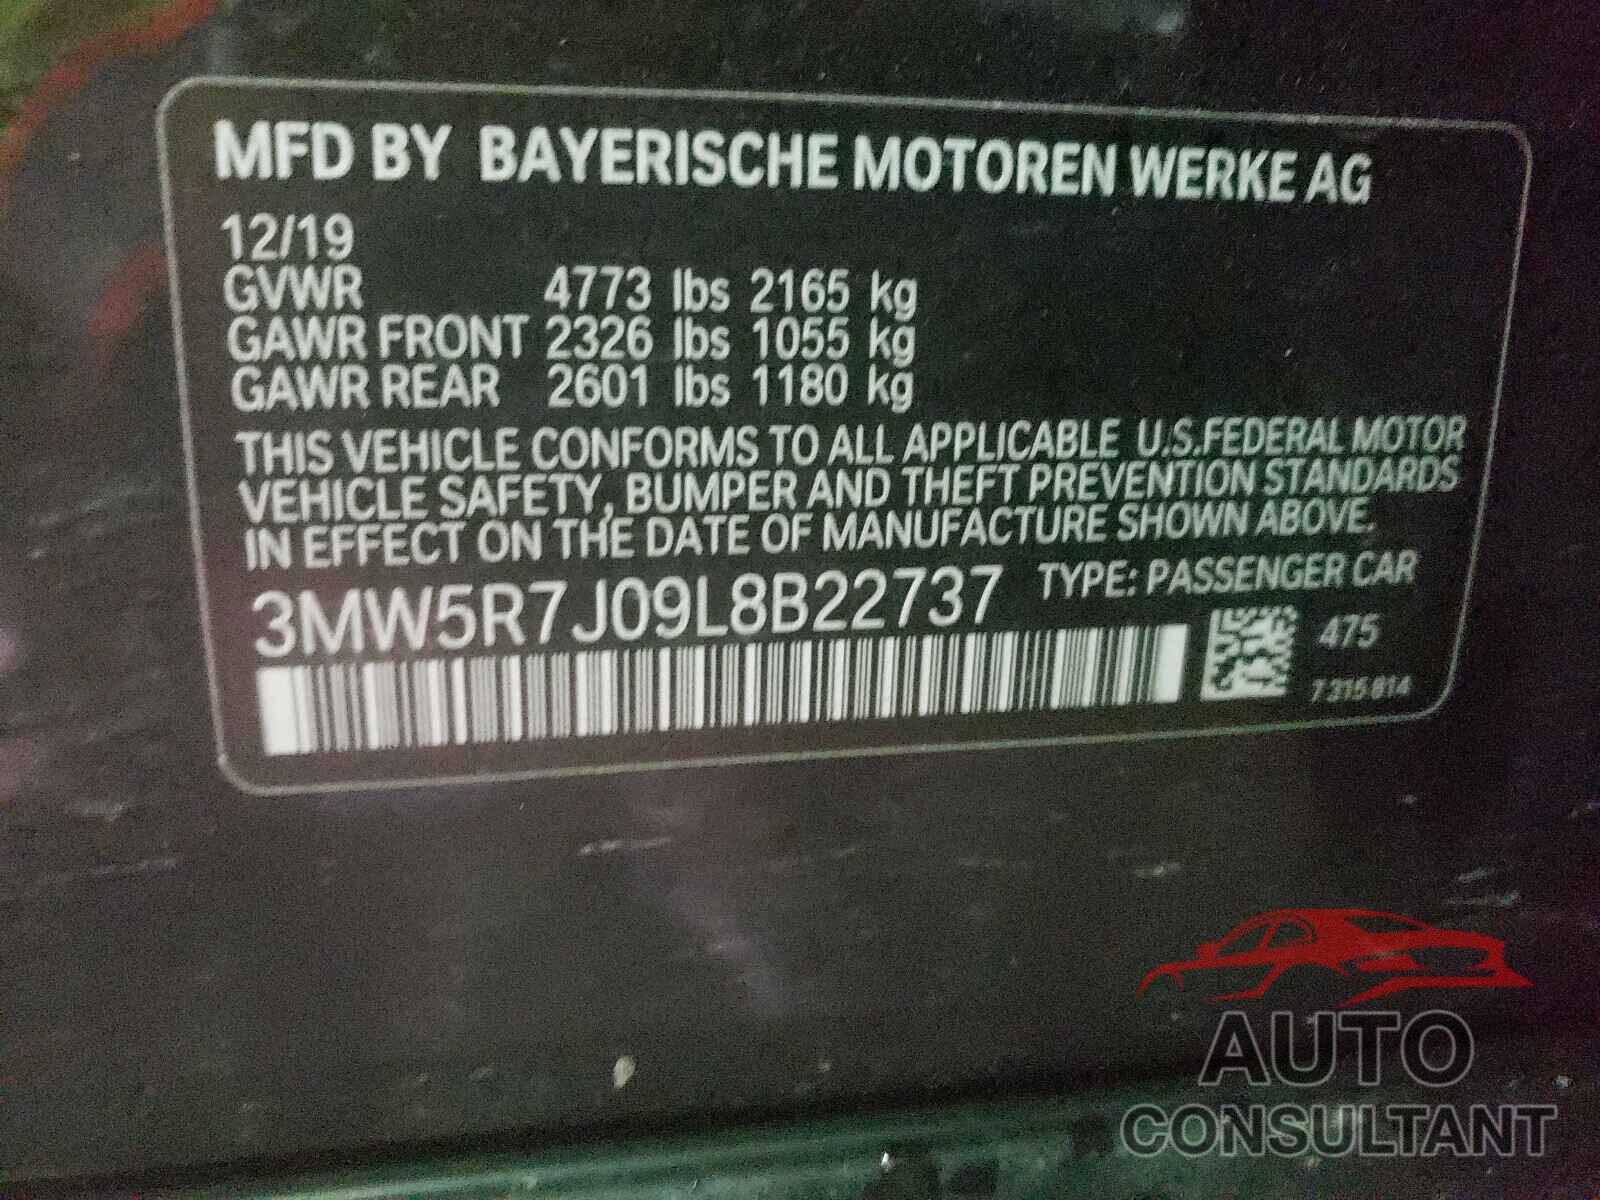 BMW 3 SERIES 2020 - 3MW5R7J09L8B22737